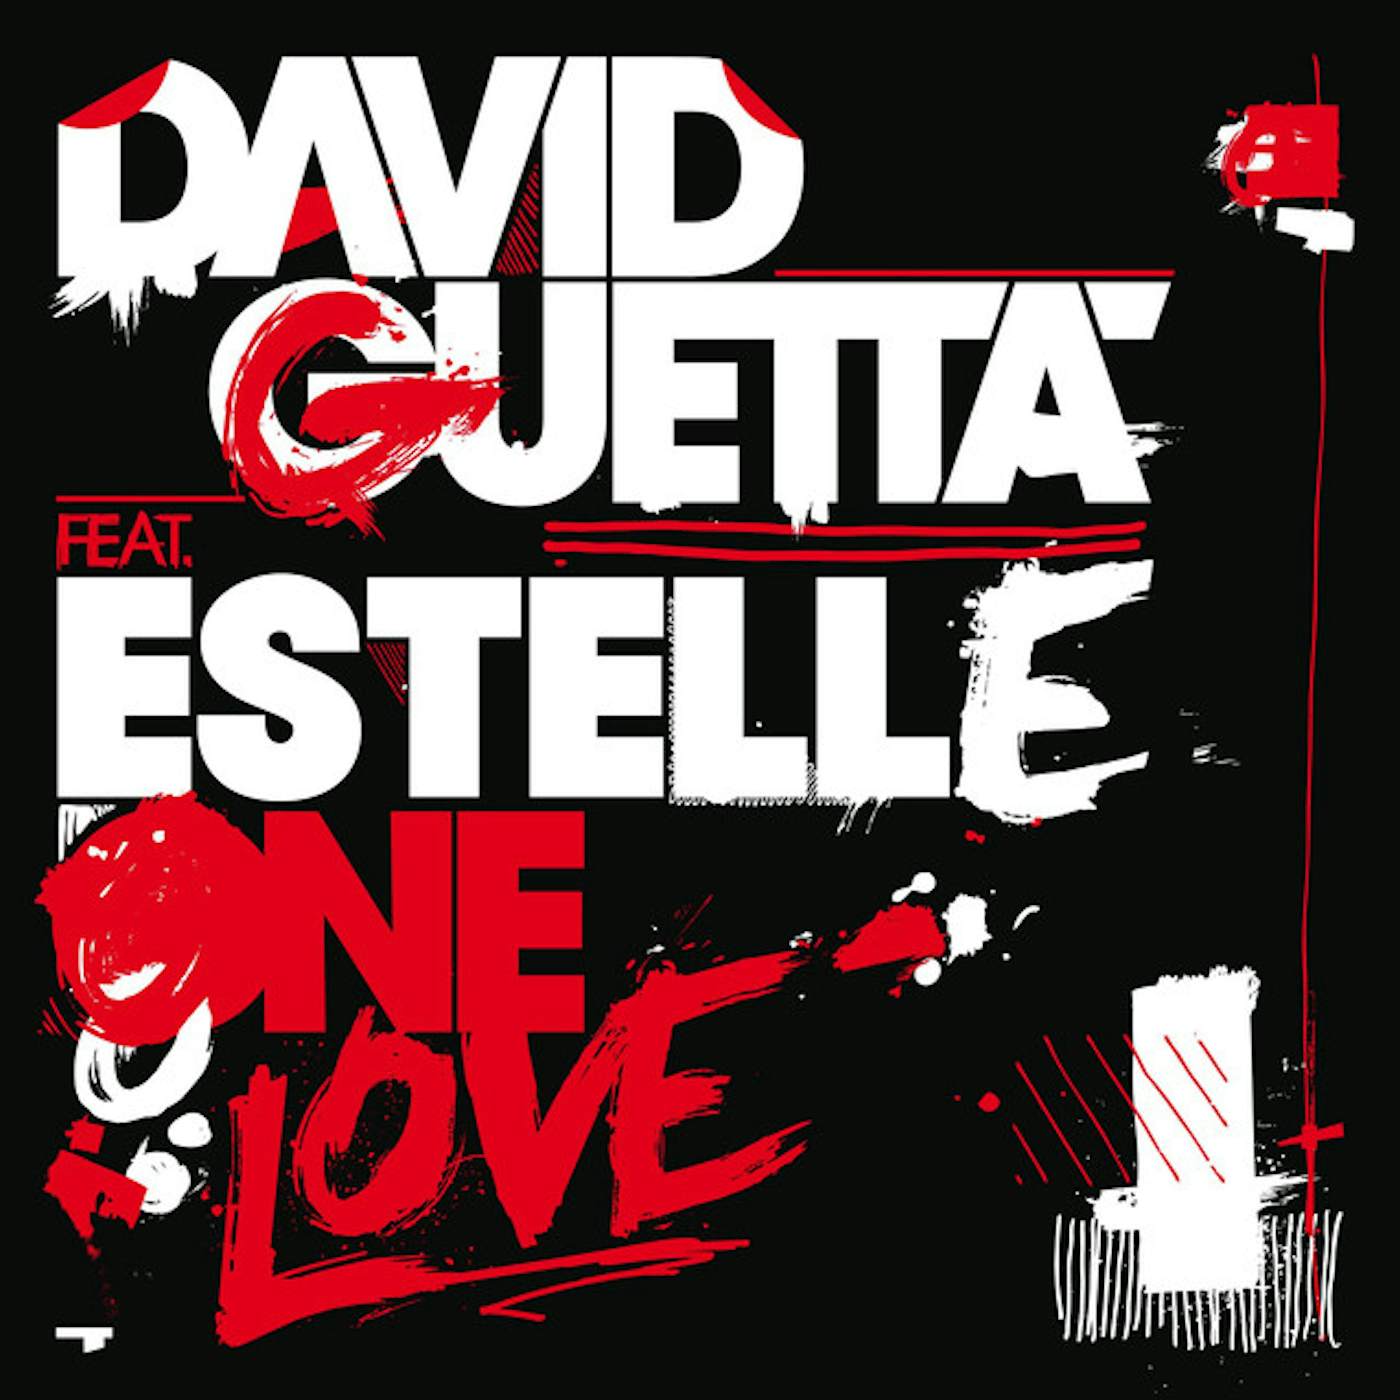 David Guetta One Love Vinyl Record